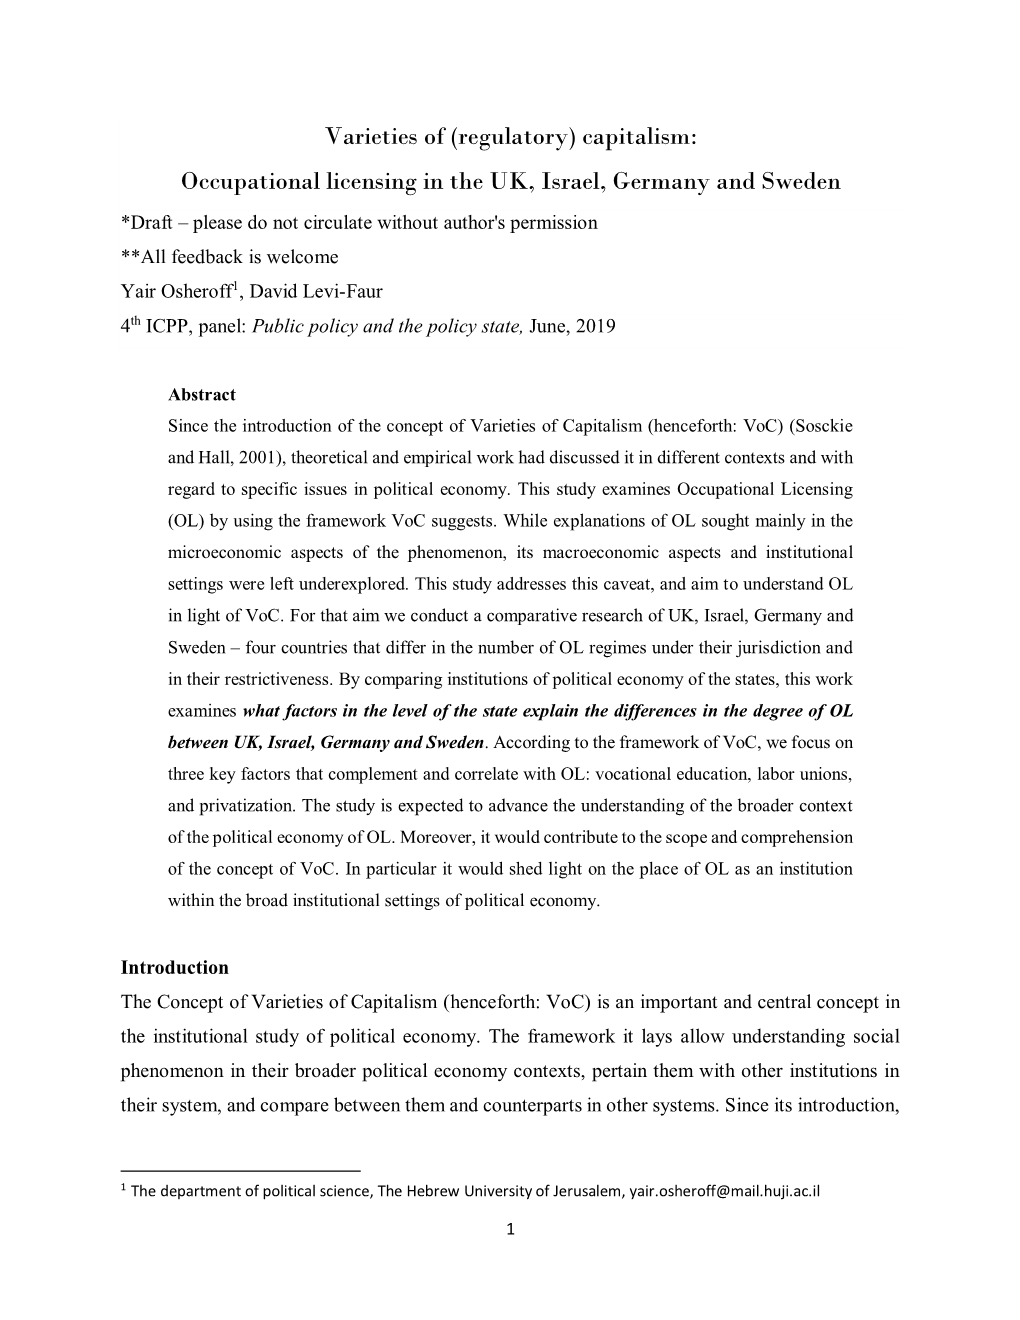 Varieties of (Regulatory) Capitalism: Occupational Licensing in the UK